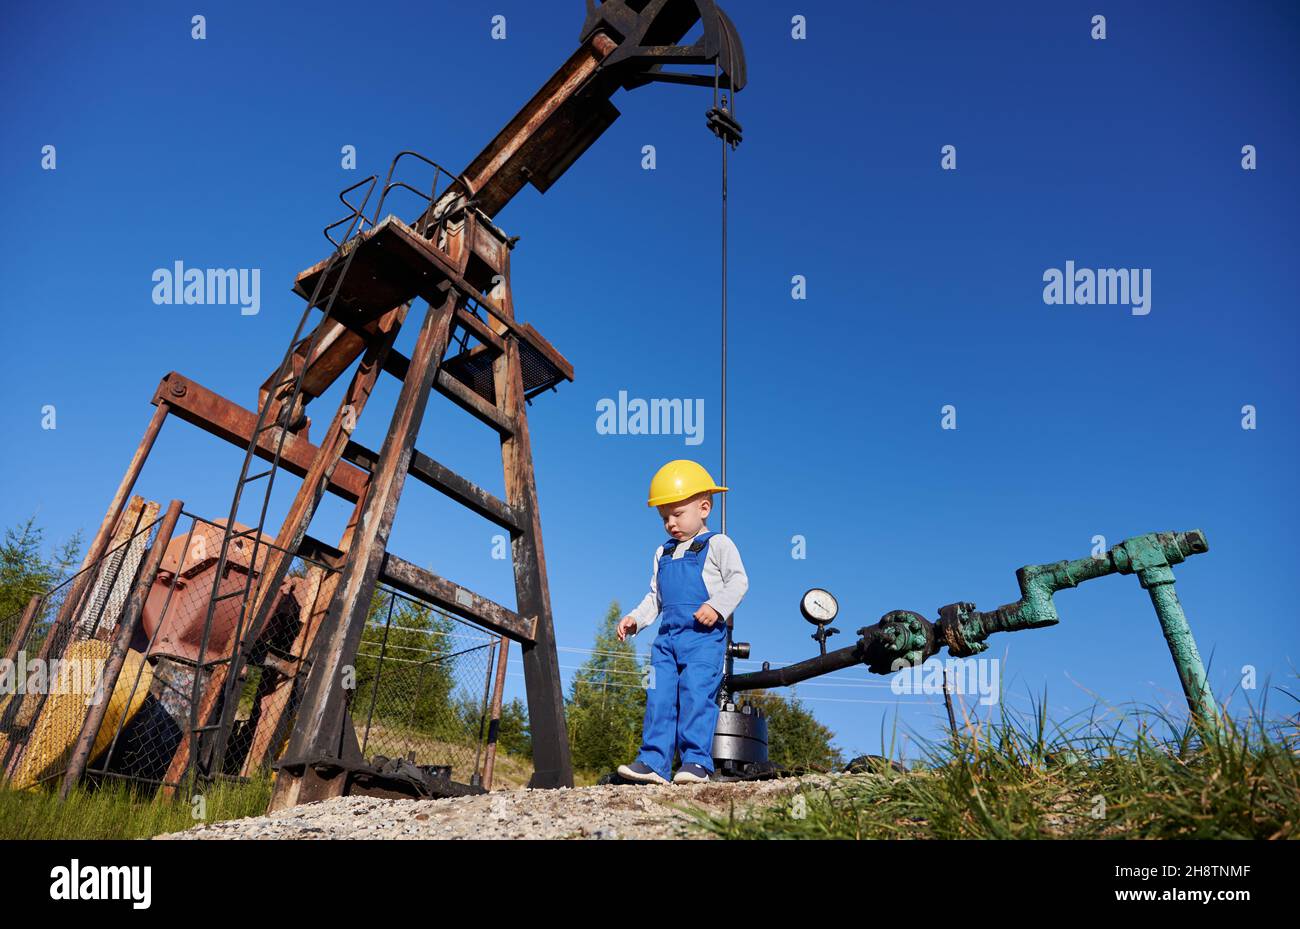 Ansicht von unten eines kleinen jungen Energietechnikers in der Nähe der Ölplattform. Boy in Overalls gegen den blauen Himmel, Petroleum-Pipeline und Pumpenheber für die Gewinnung von natürlichem Kraftstoff. Stockfoto